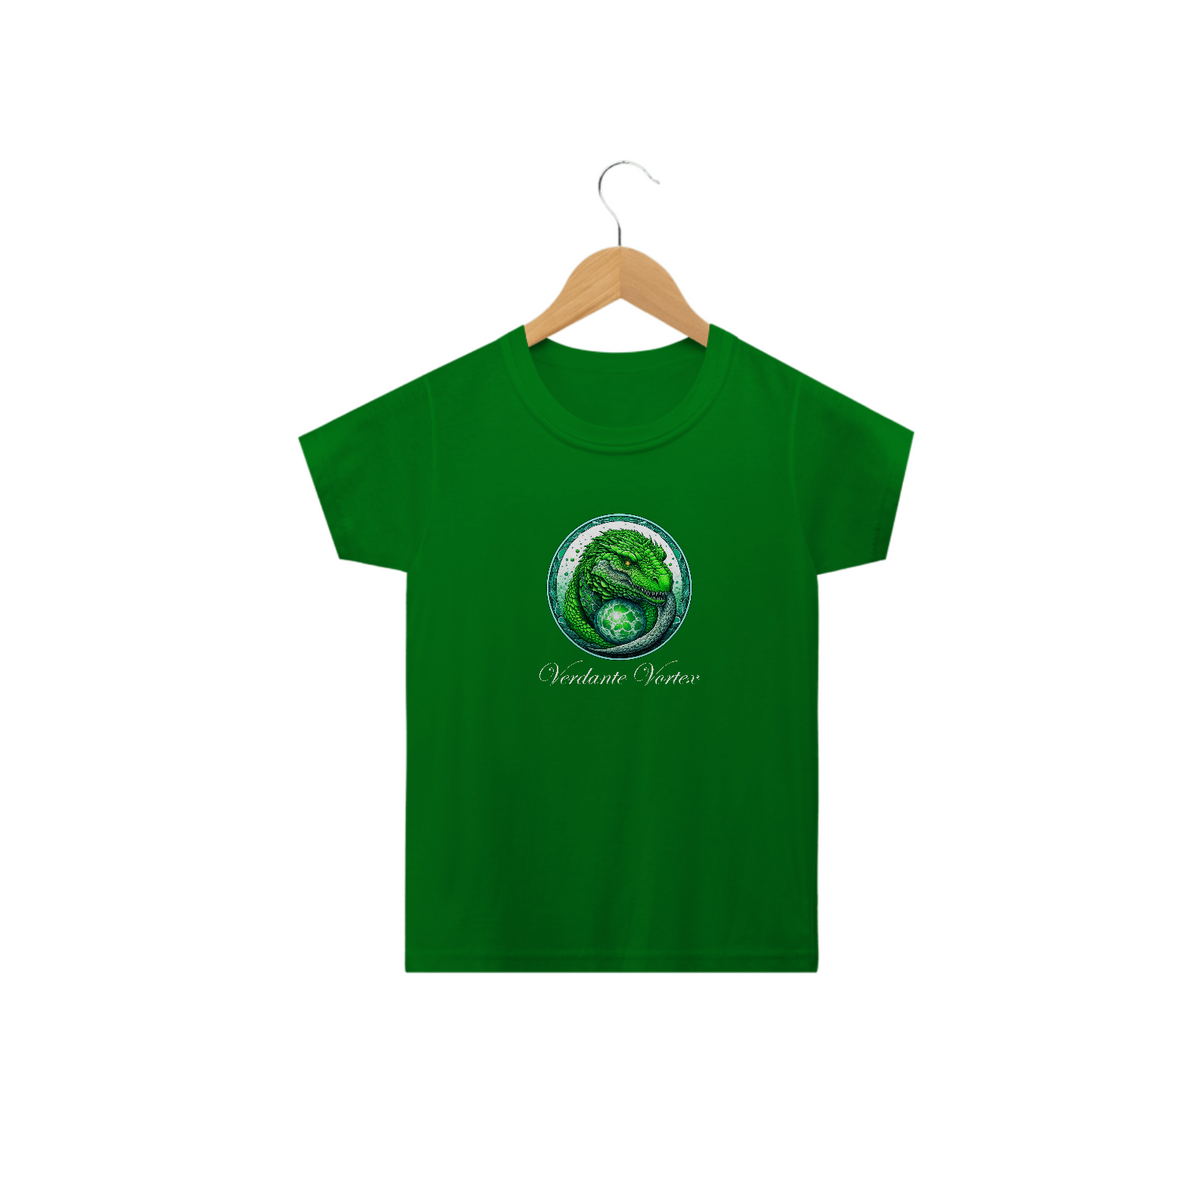 Nome do produto: Camiseta Infantil - Coleção Still Dragon - Verdante Vortex